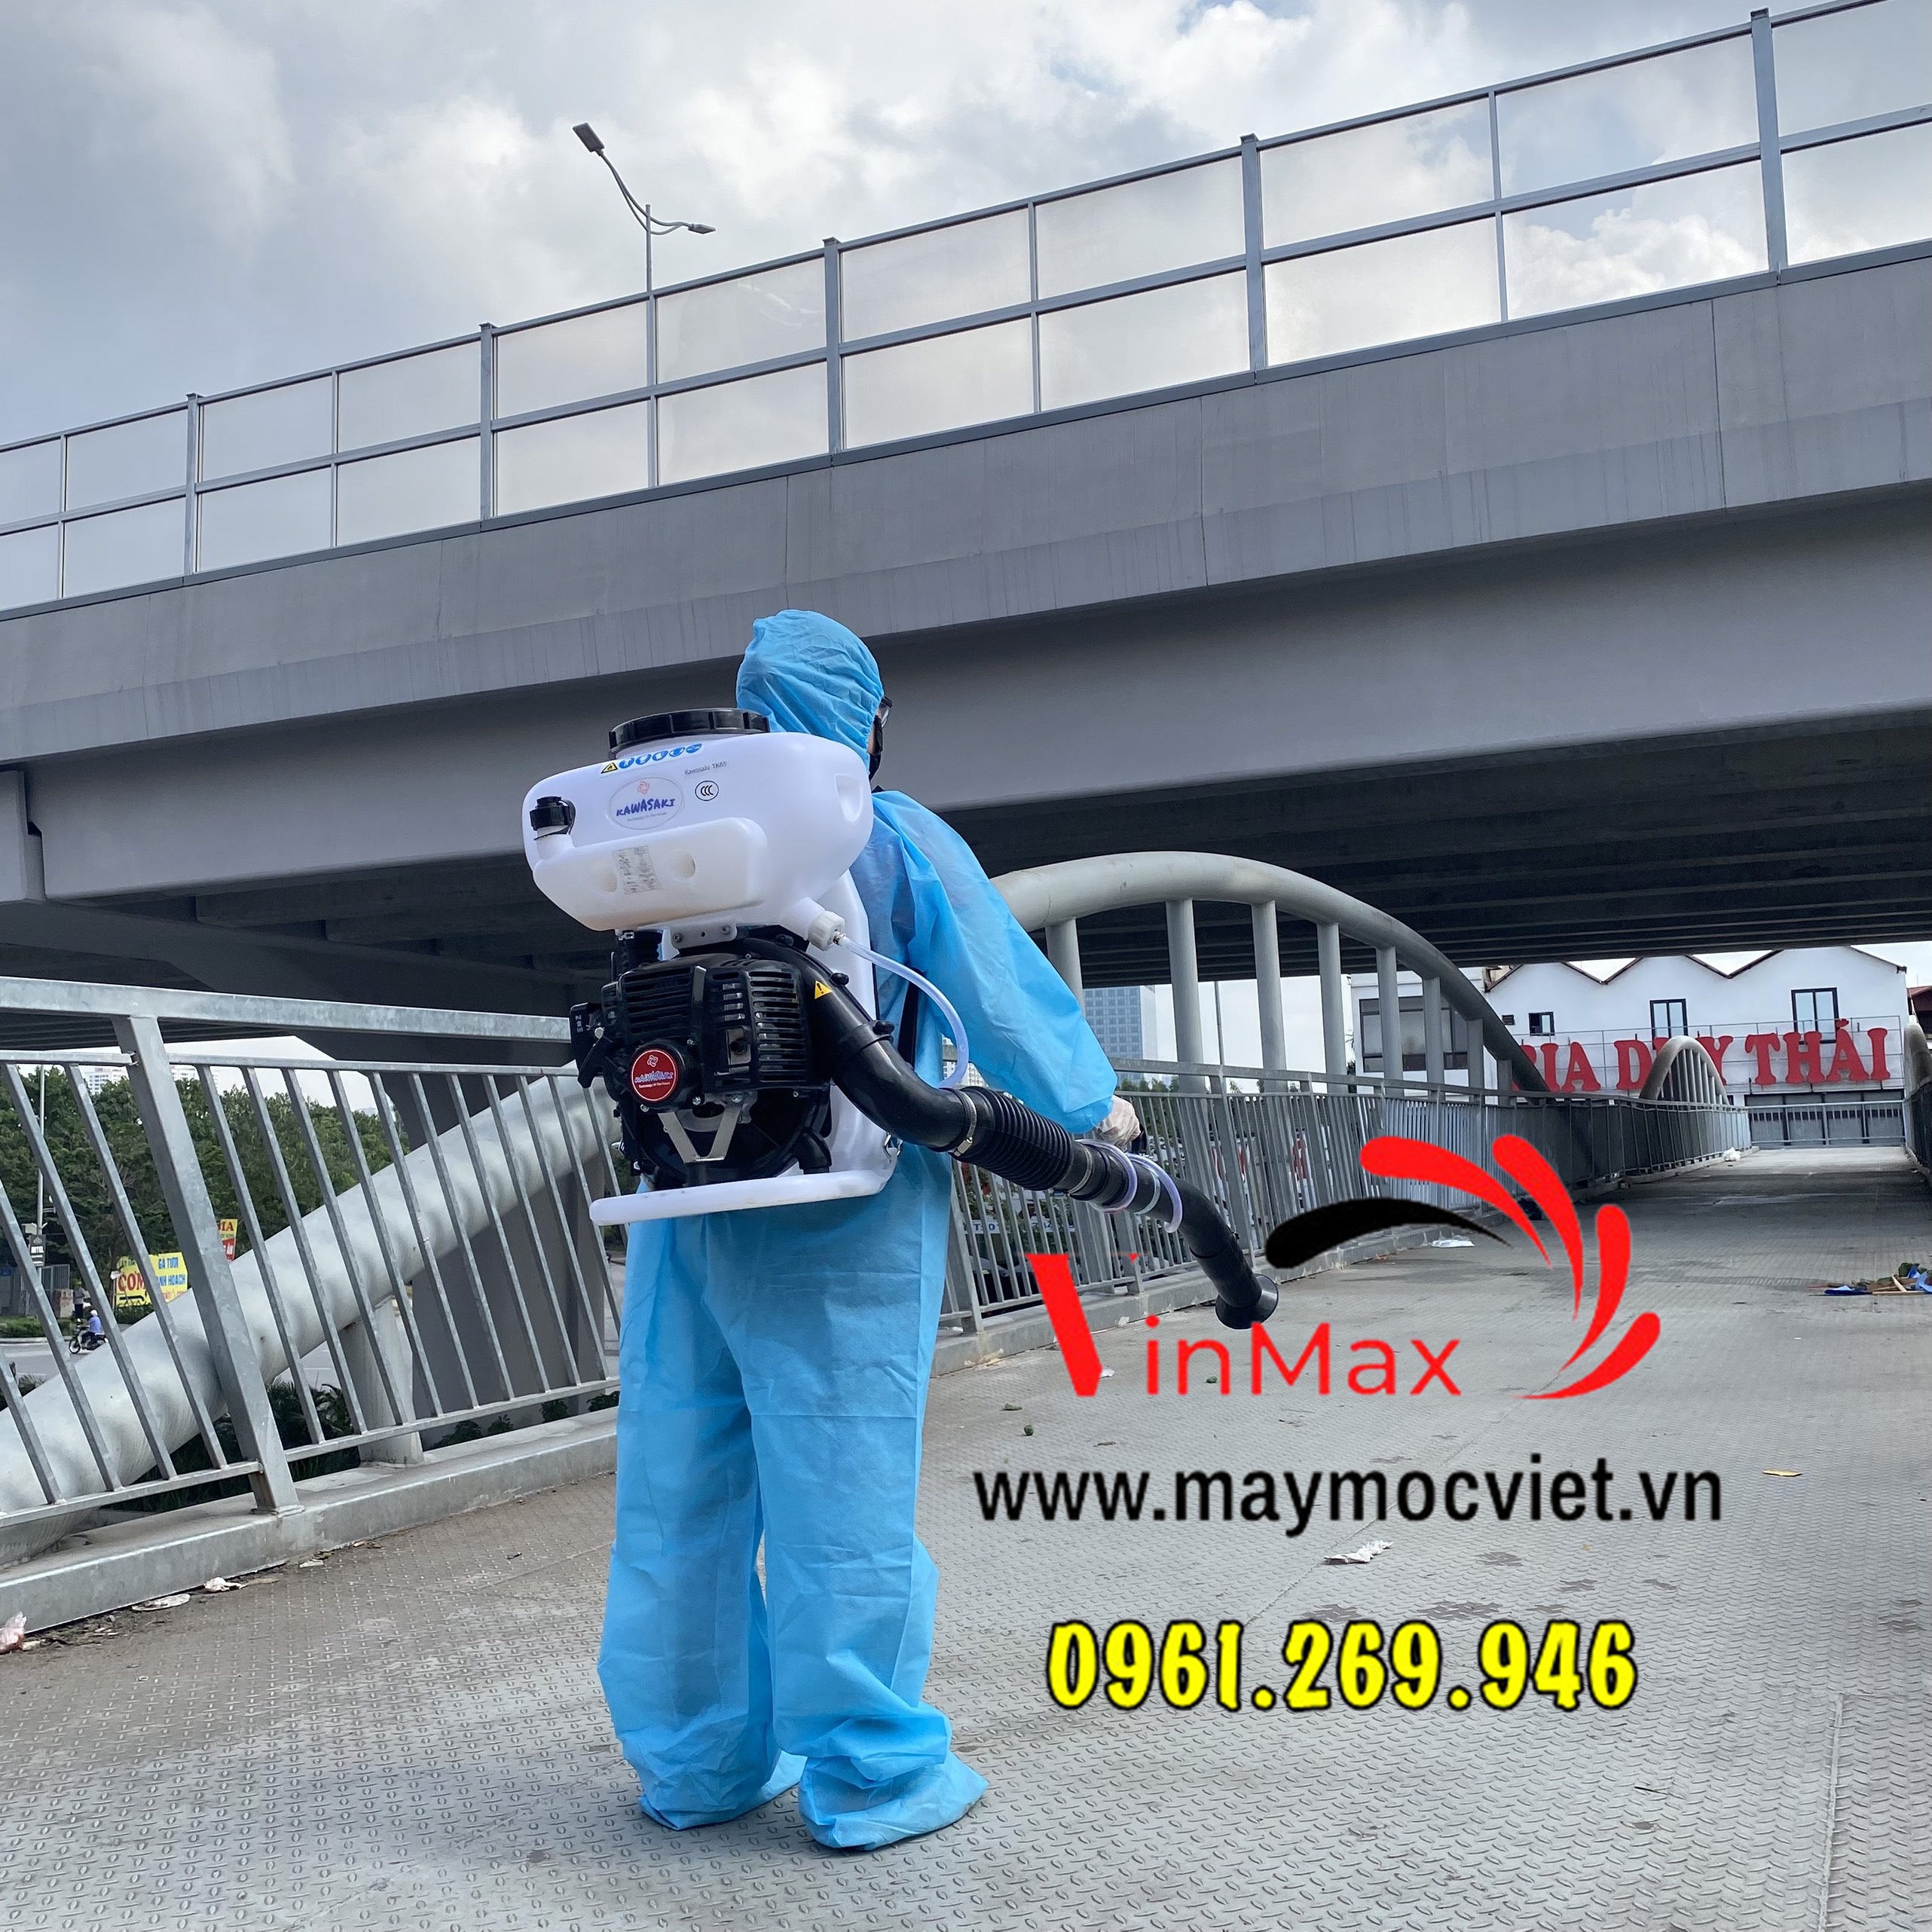 5 Máy phun muỗi đeo vai Kawasaki tk65 phun diệt côn trùng cho nhà xưởng, kho hàng,gia đình